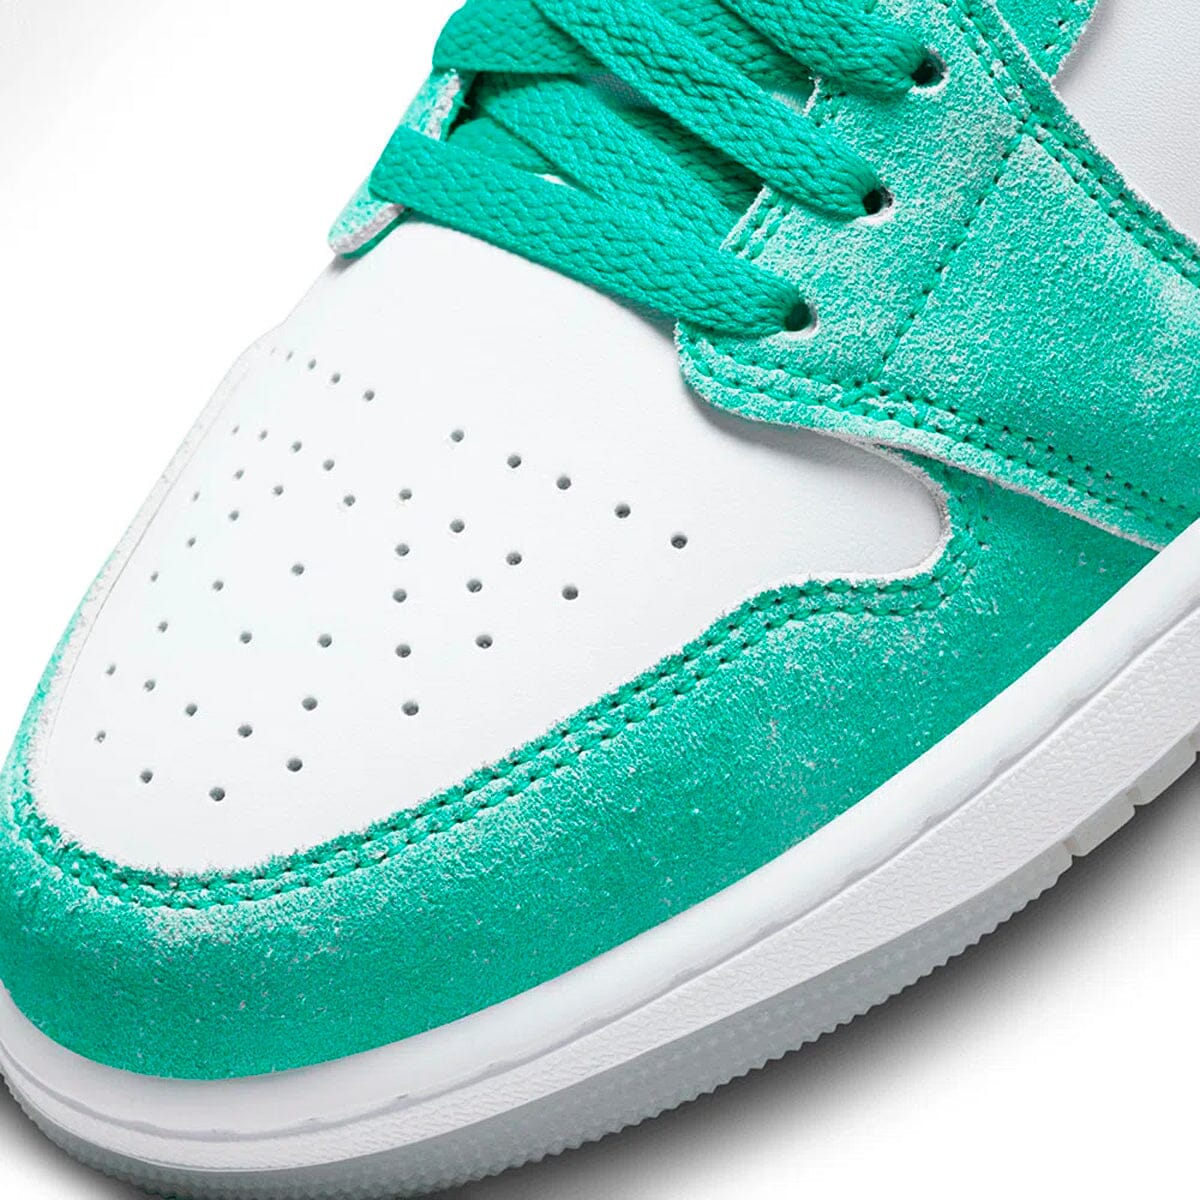 Air Jordan 1 Low New Emerald Blizz Sneakers 